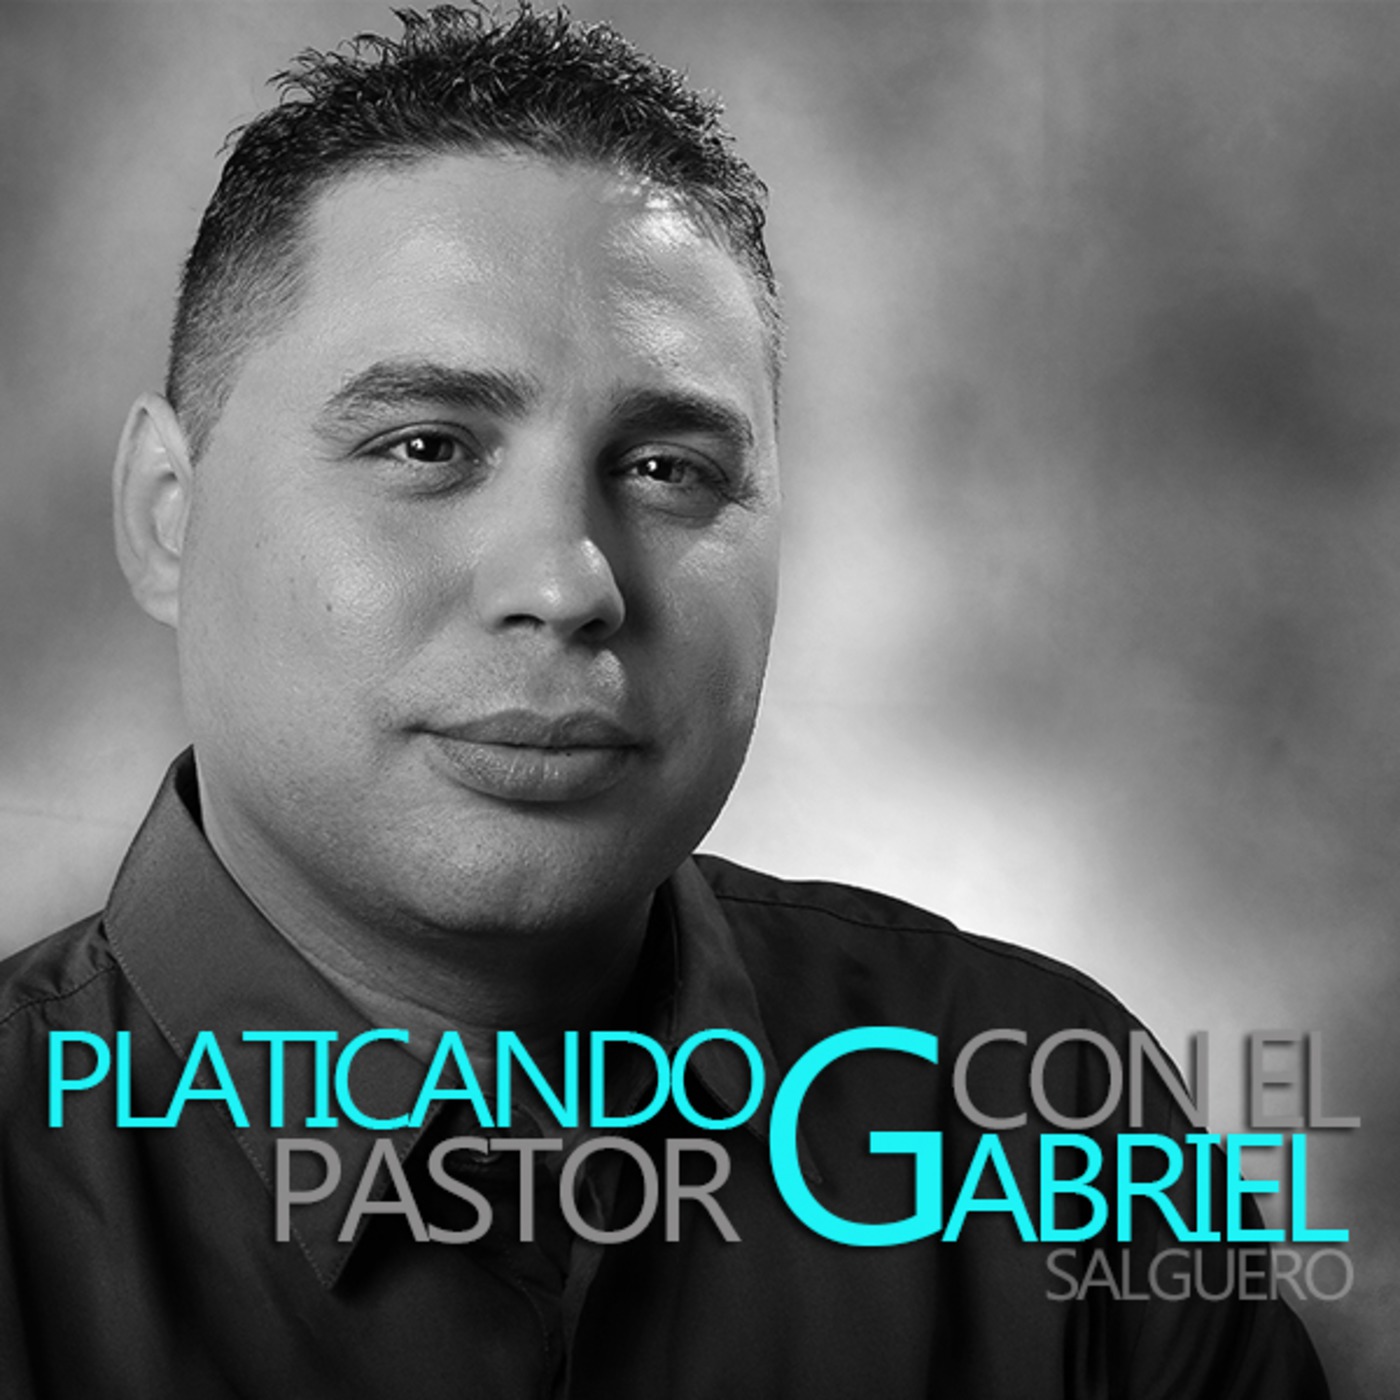 Maravilla-Platicando con el Pastor Gabriel Salguero 007S